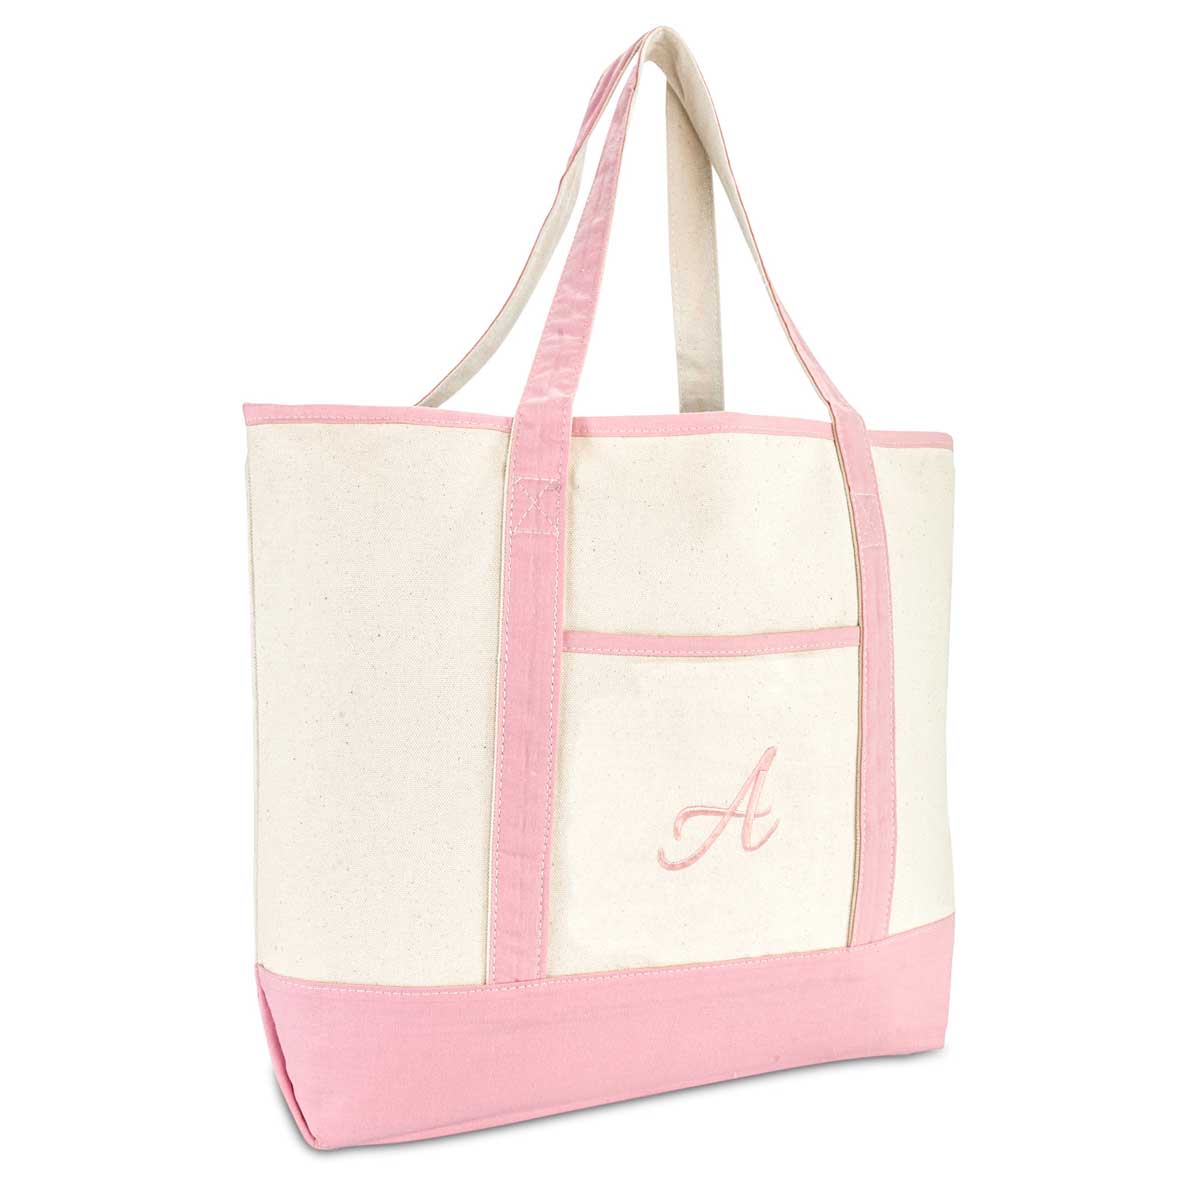 Dalix Women's Cotton Canvas Tote Bag Large Shoulder Bags Pink Monogram A - Z